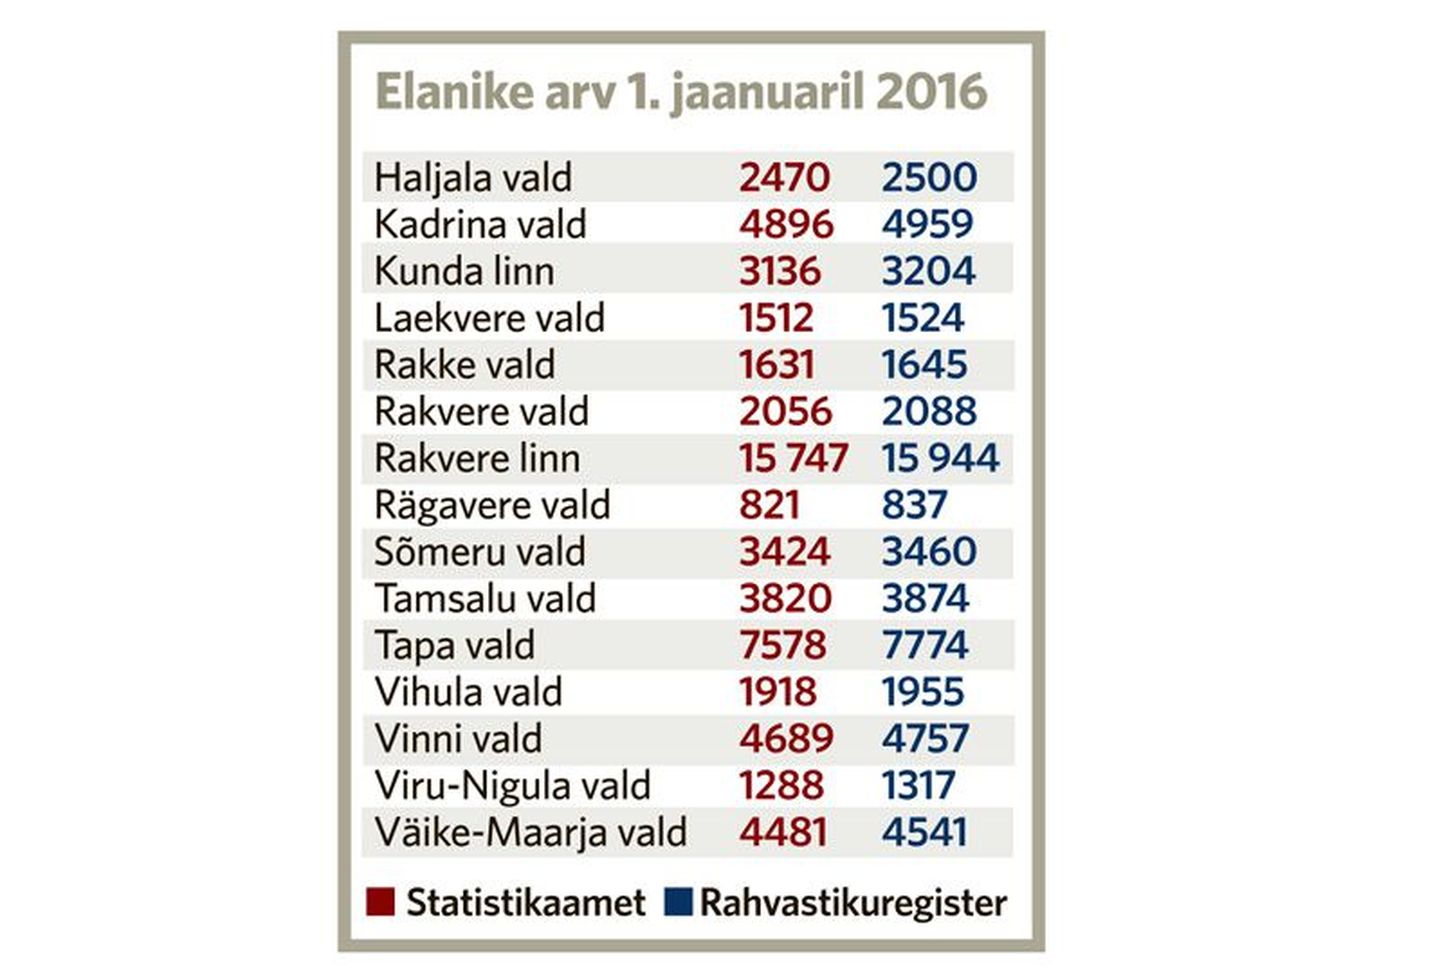 Elanike arv 1. jaanuaril 2016